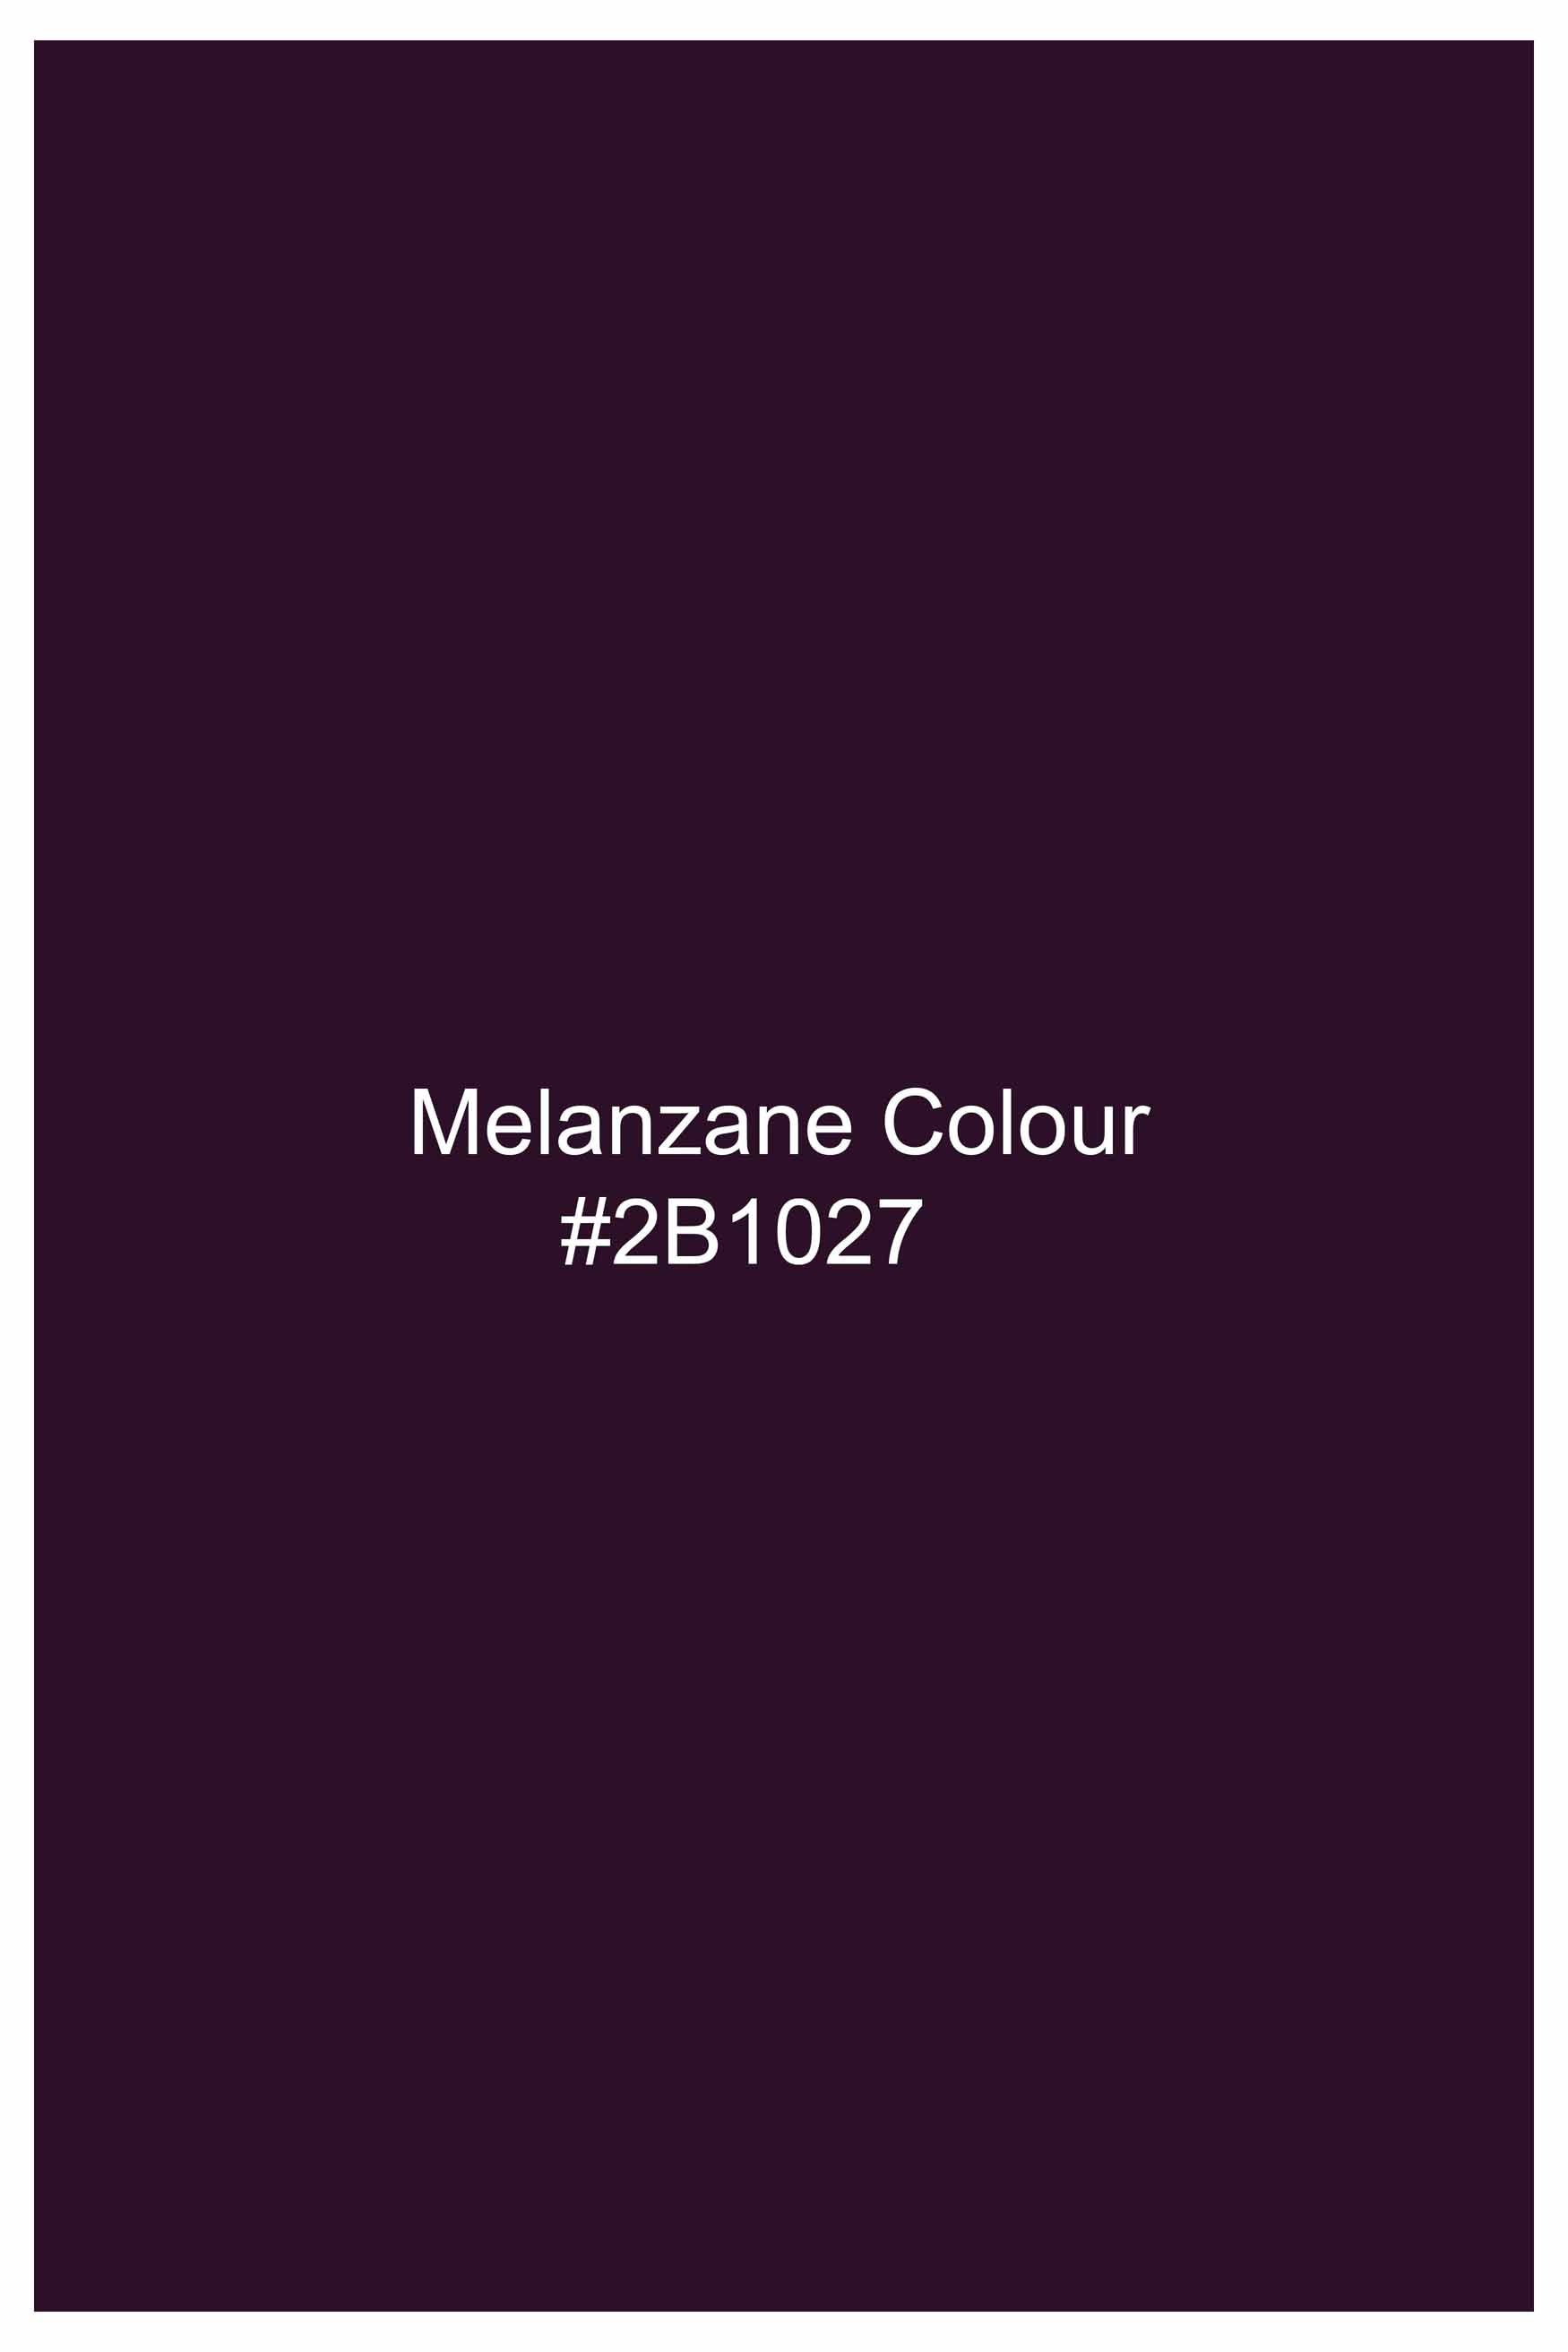 Melanzane Purple Lion Hand Painted Subtle Sheen Super Soft Premium Cotton Designer Shirt 8691-BLK-ART-38, 8691-BLK-ART-H-38, 8691-BLK-ART-39, 8691-BLK-ART-H-39, 8691-BLK-ART-40, 8691-BLK-ART-H-40, 8691-BLK-ART-42, 8691-BLK-ART-H-42, 8691-BLK-ART-44, 8691-BLK-ART-H-44, 8691-BLK-ART-46, 8691-BLK-ART-H-46, 8691-BLK-ART-48, 8691-BLK-ART-H-48, 8691-BLK-ART-50, 8691-BLK-ART-H-50, 8691-BLK-ART-52, 8691-BLK-ART-H-52